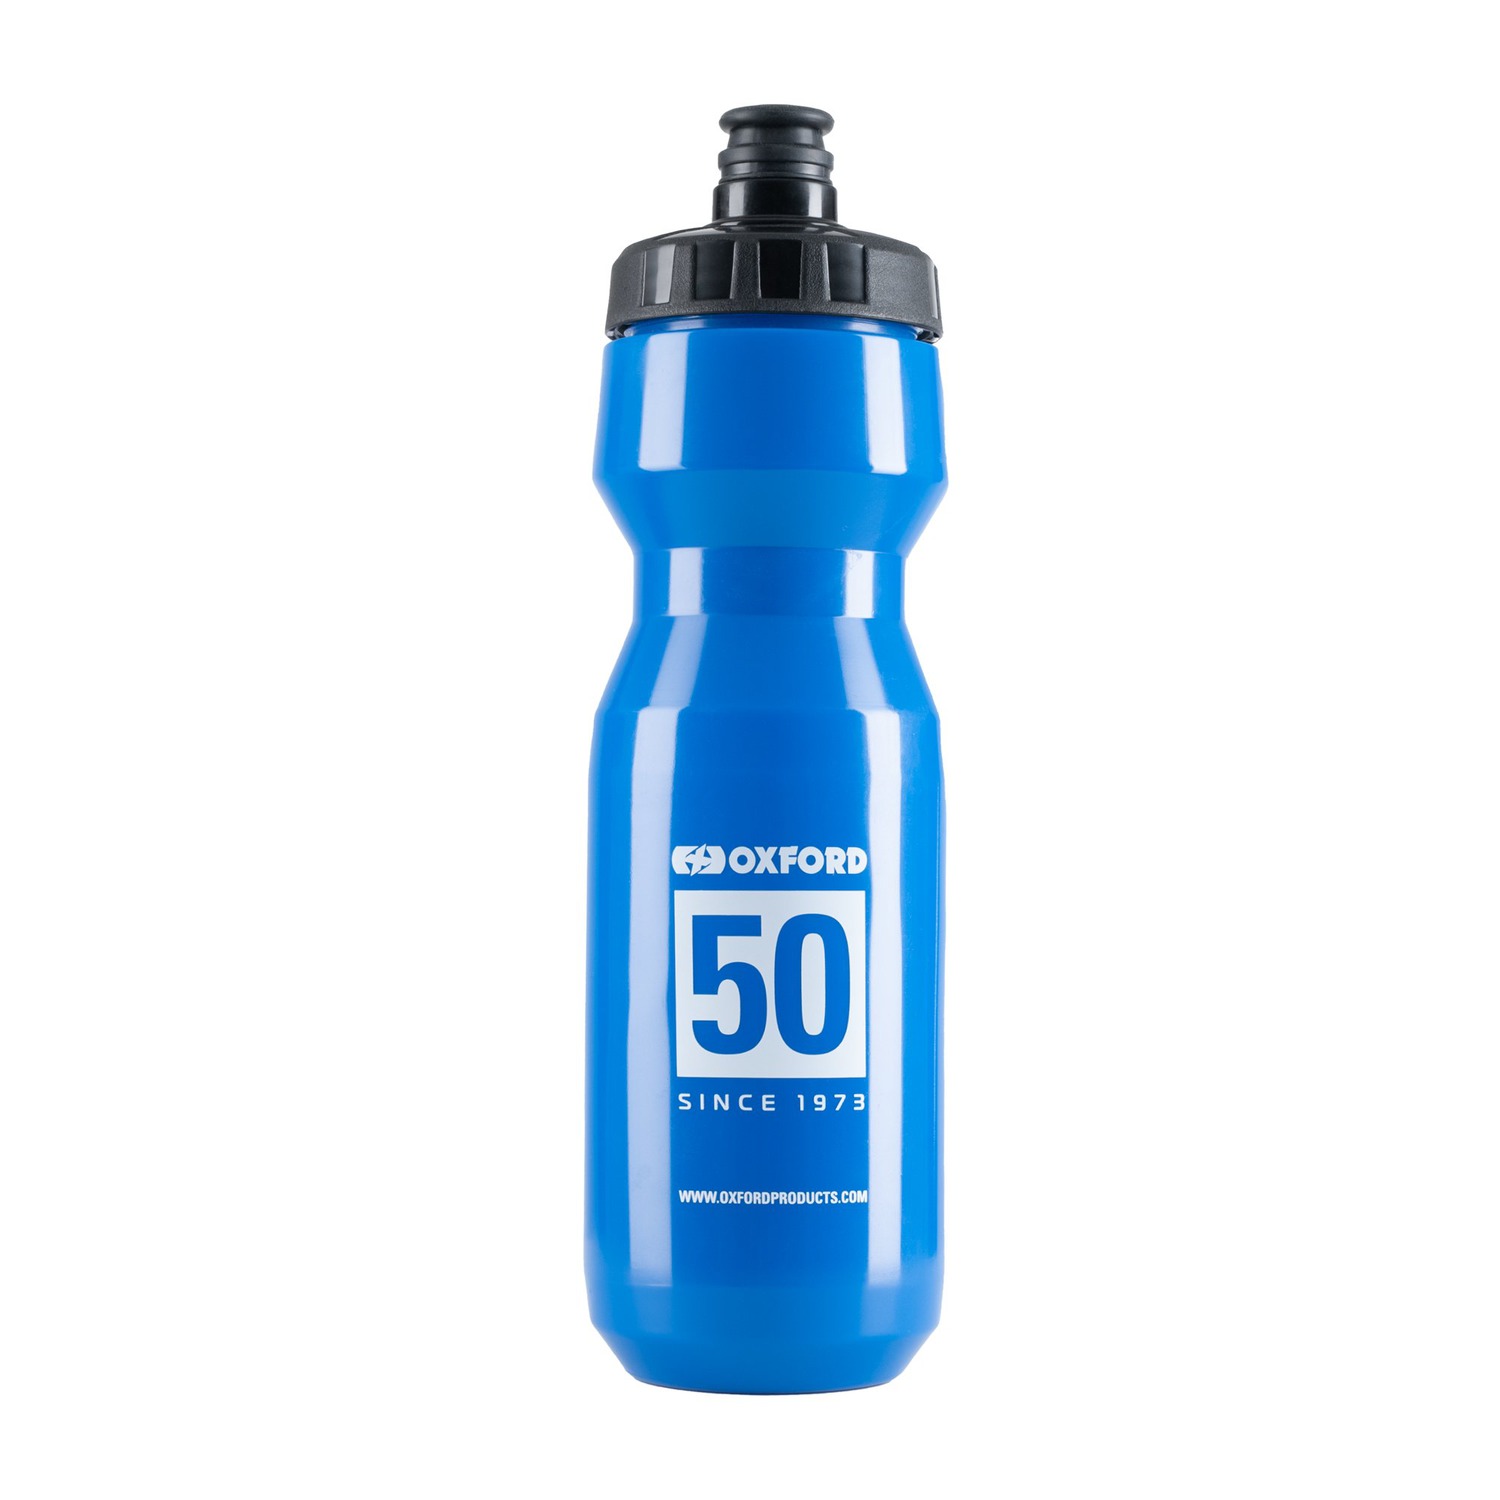 Obrázek produktu láhev/bidon HYDRA750, OXFORD (modrá, objem 750ml, edice k 50-tému výročí značky) BT153OX